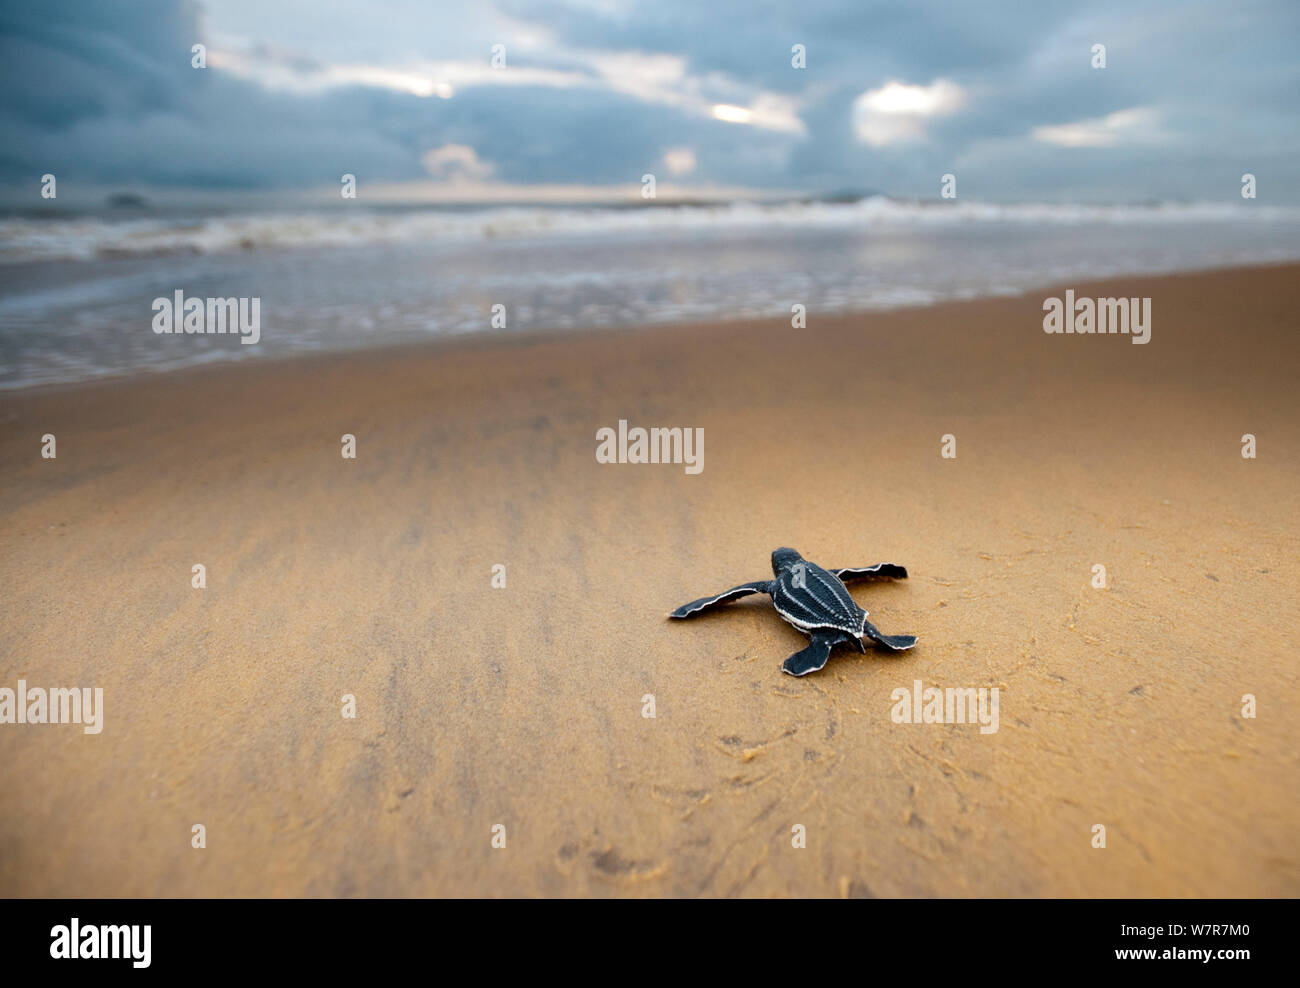 Hatchling" Lederschildkröte (dermochelys Coriacea) Strand in Richtung Meer, Cayenne, Französisch-Guayana, Juli Stockfoto